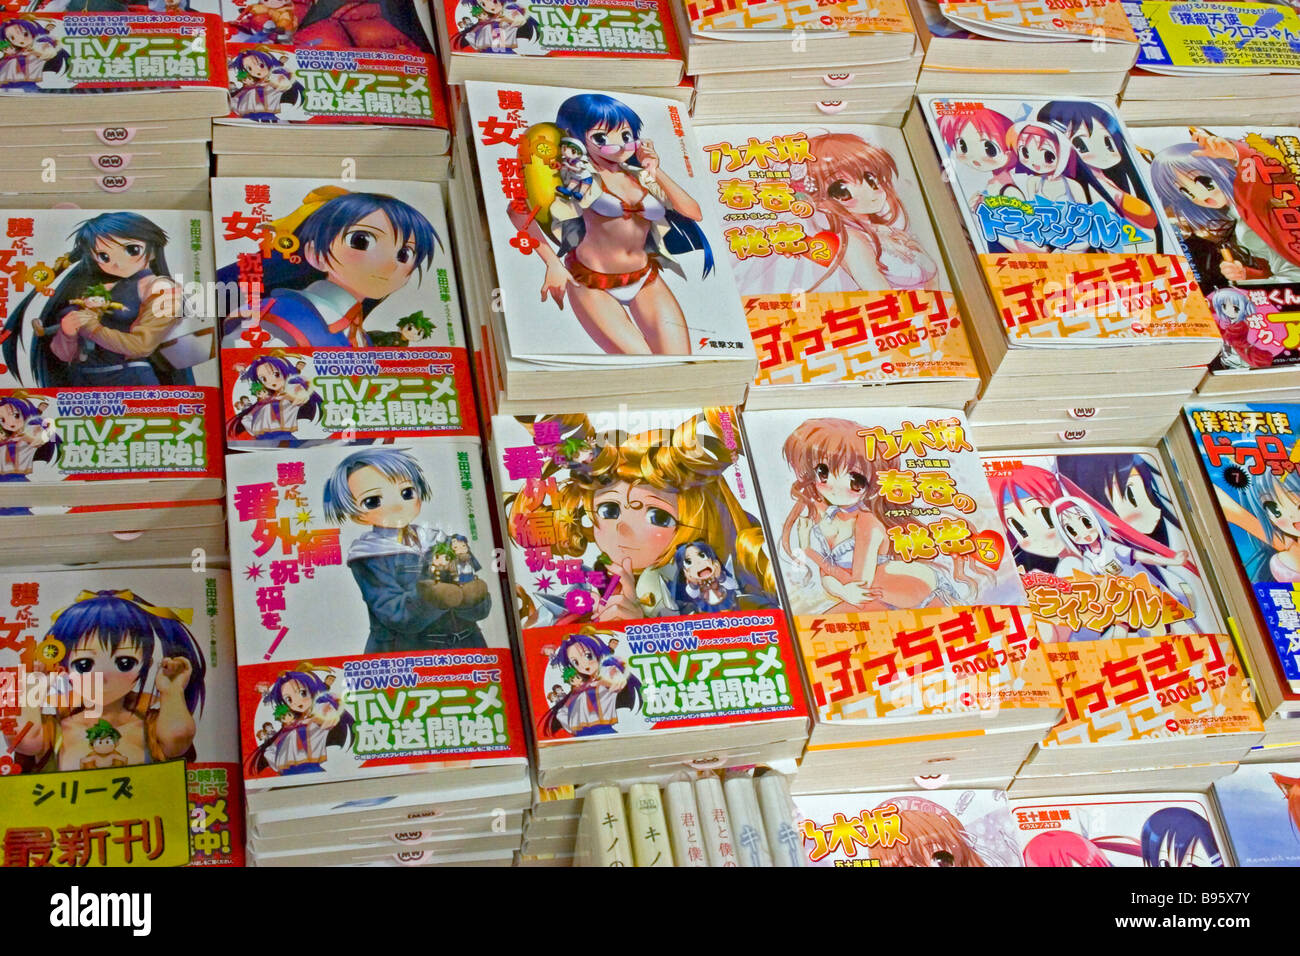 Le Japon Honshu Tokyo Akihabara Quartier électronique livres manga japonais avec des couvertures illustrées. Banque D'Images